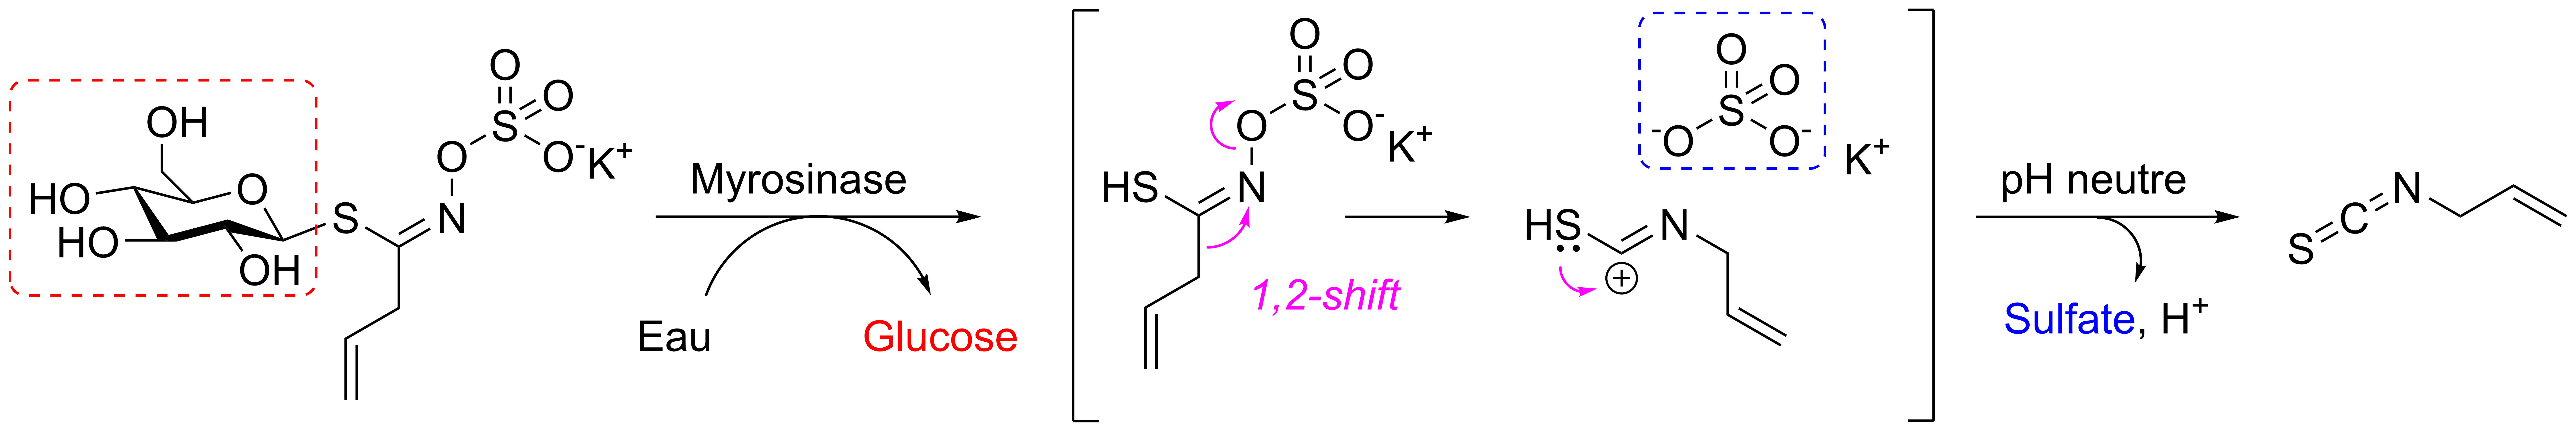 Hydrolyse d'un glucosinolate  en isothiocyanate par la myrosinase